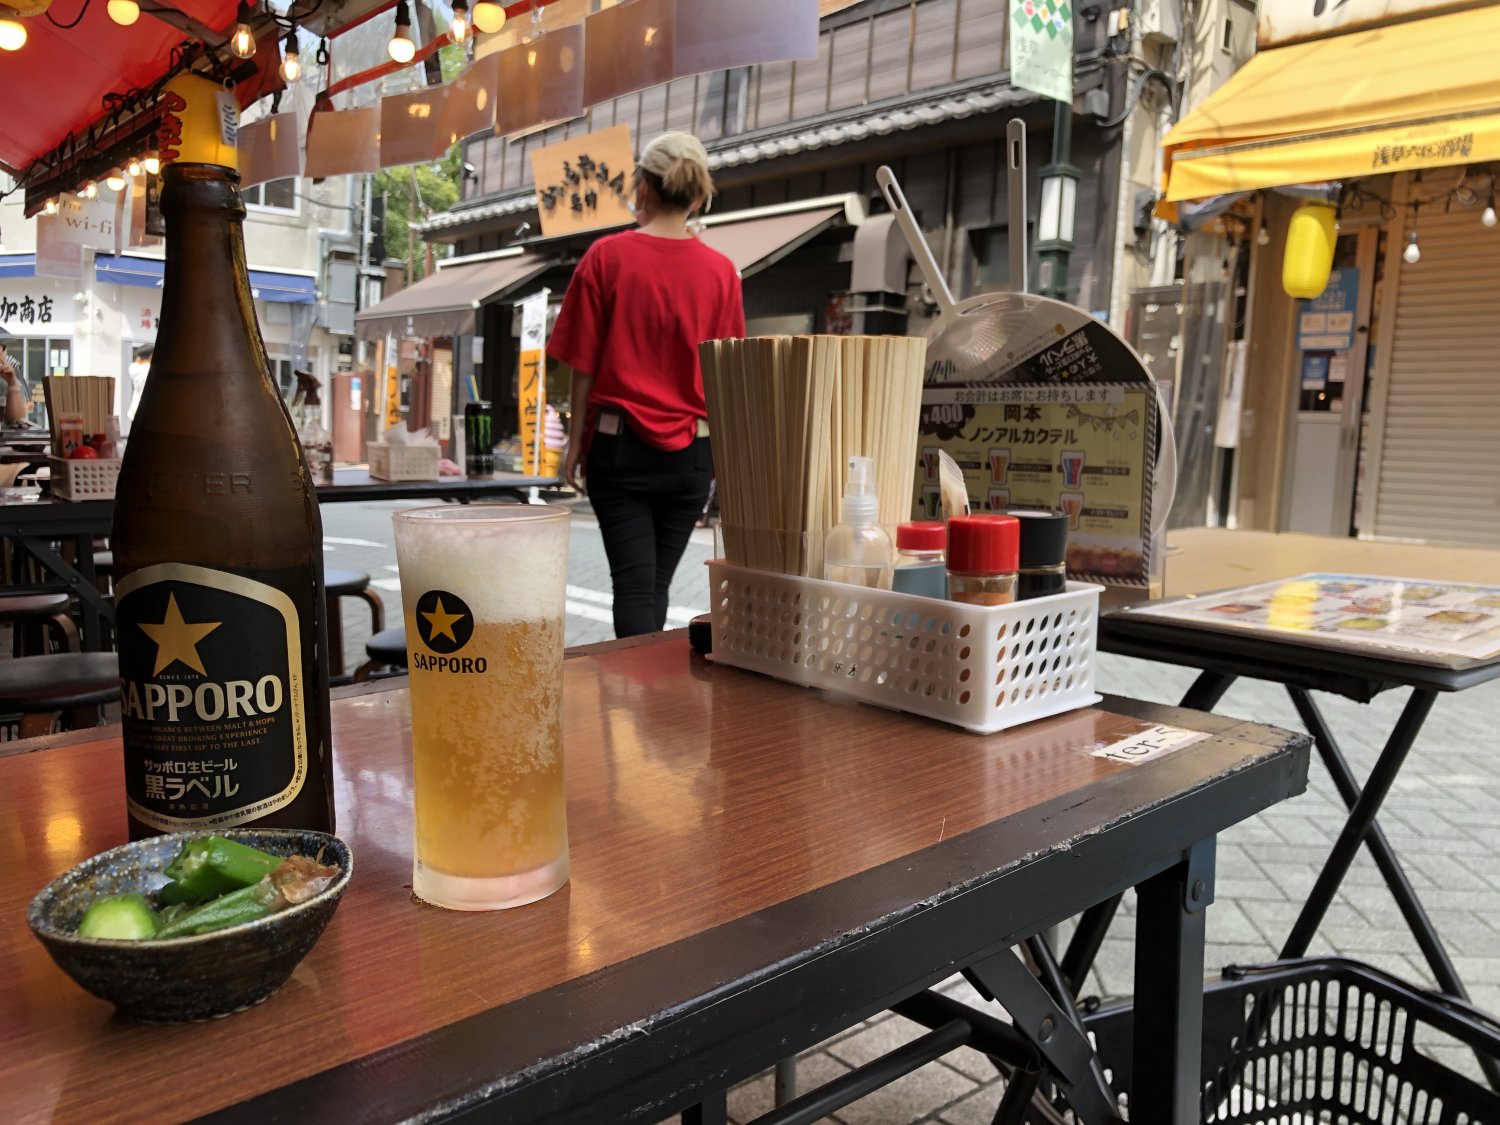 浅草寺西側の「ホッピー通り」は、昭和感あふれる場所として人気なのだが……。